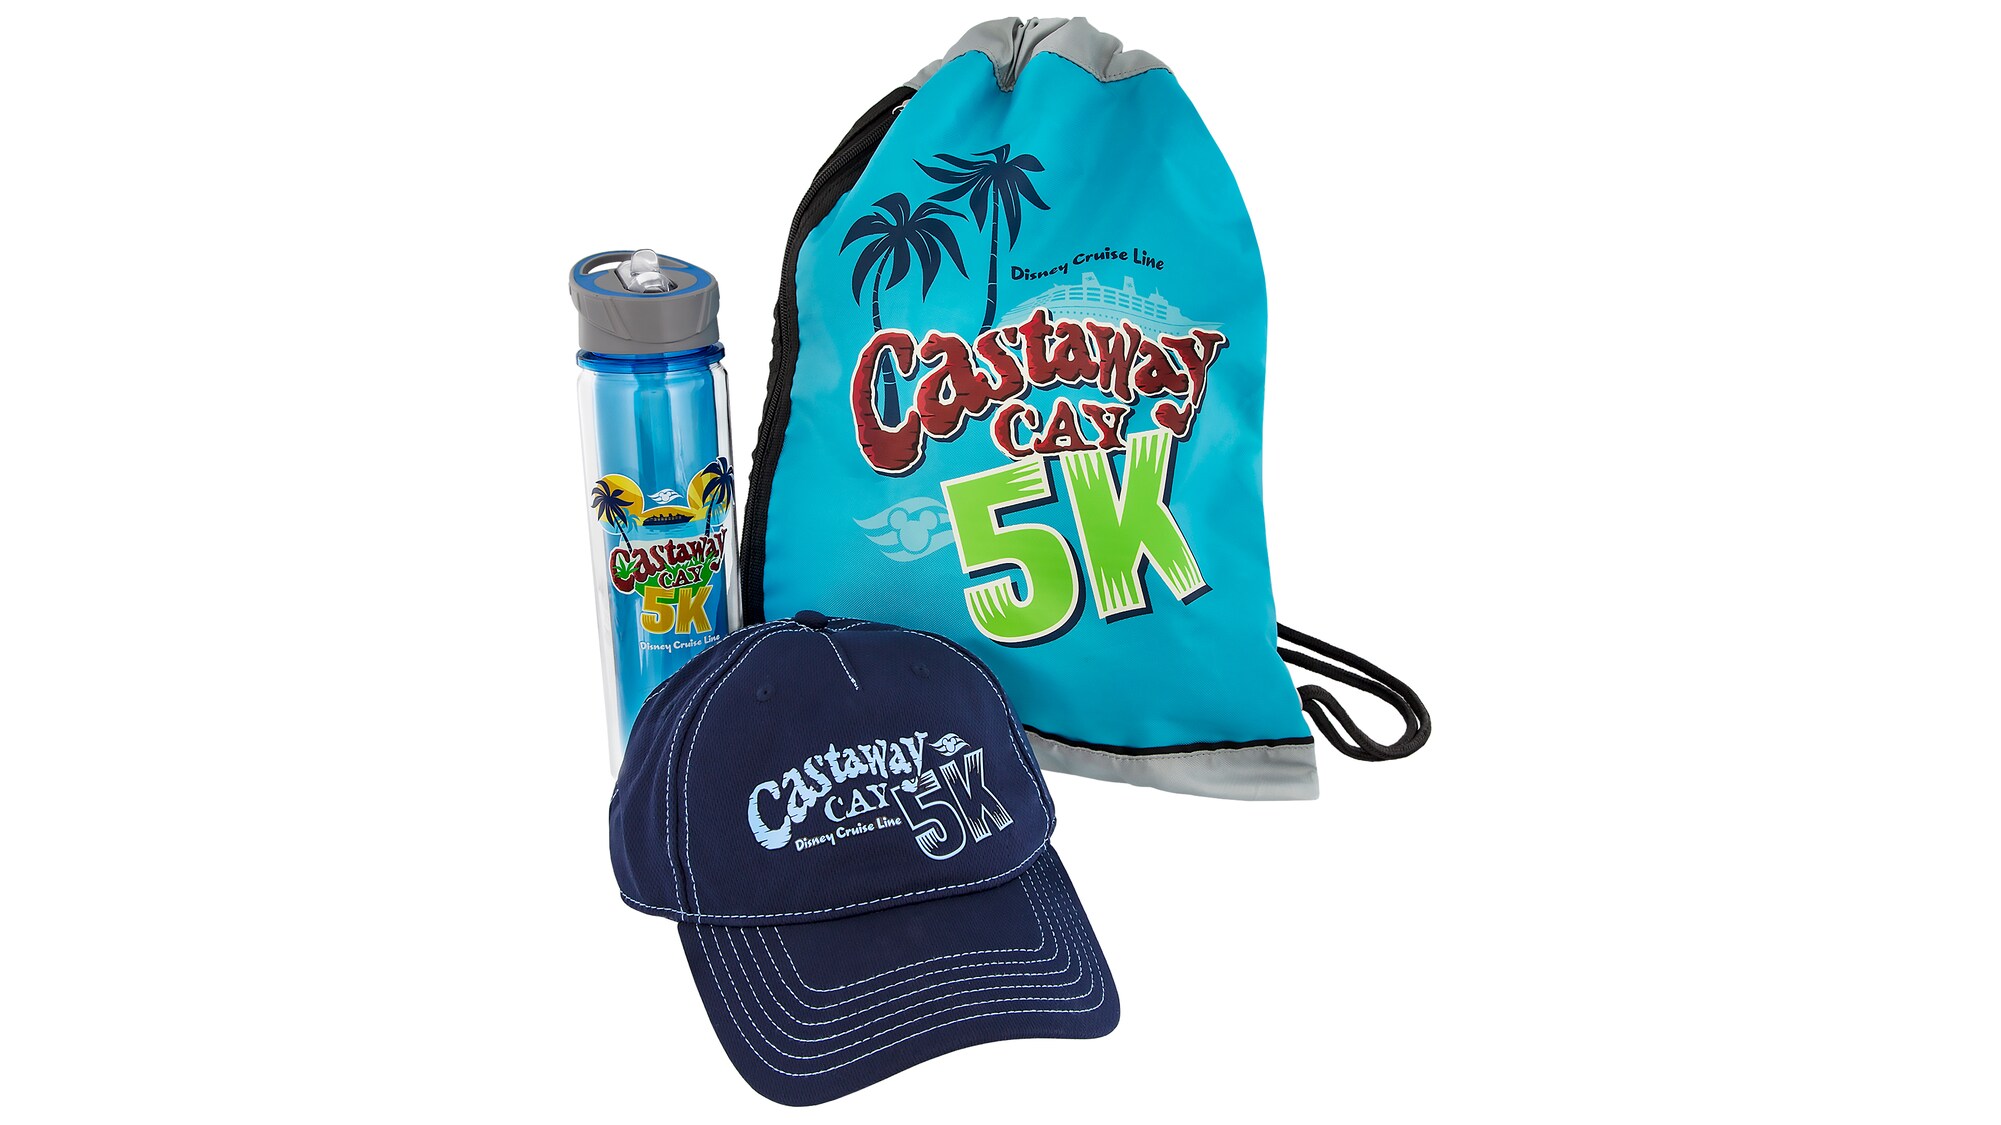 Paquete de Entrada de Castaway Cay 5k y Paquete Premium Disponible para